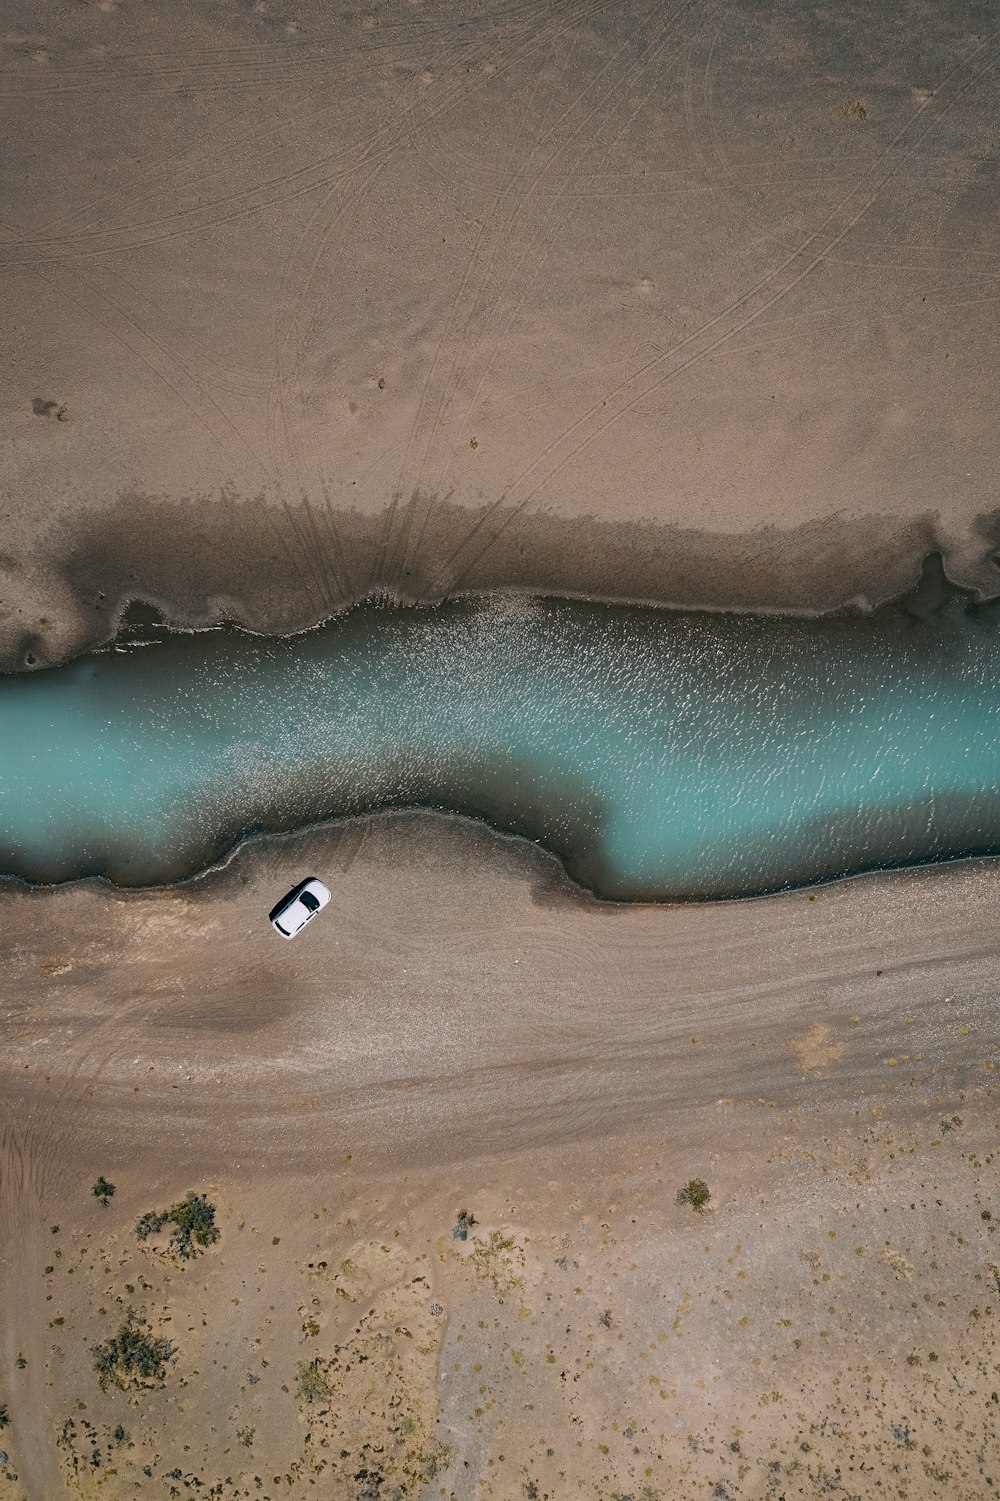 vista aérea do veículo branco perto do corpo de água